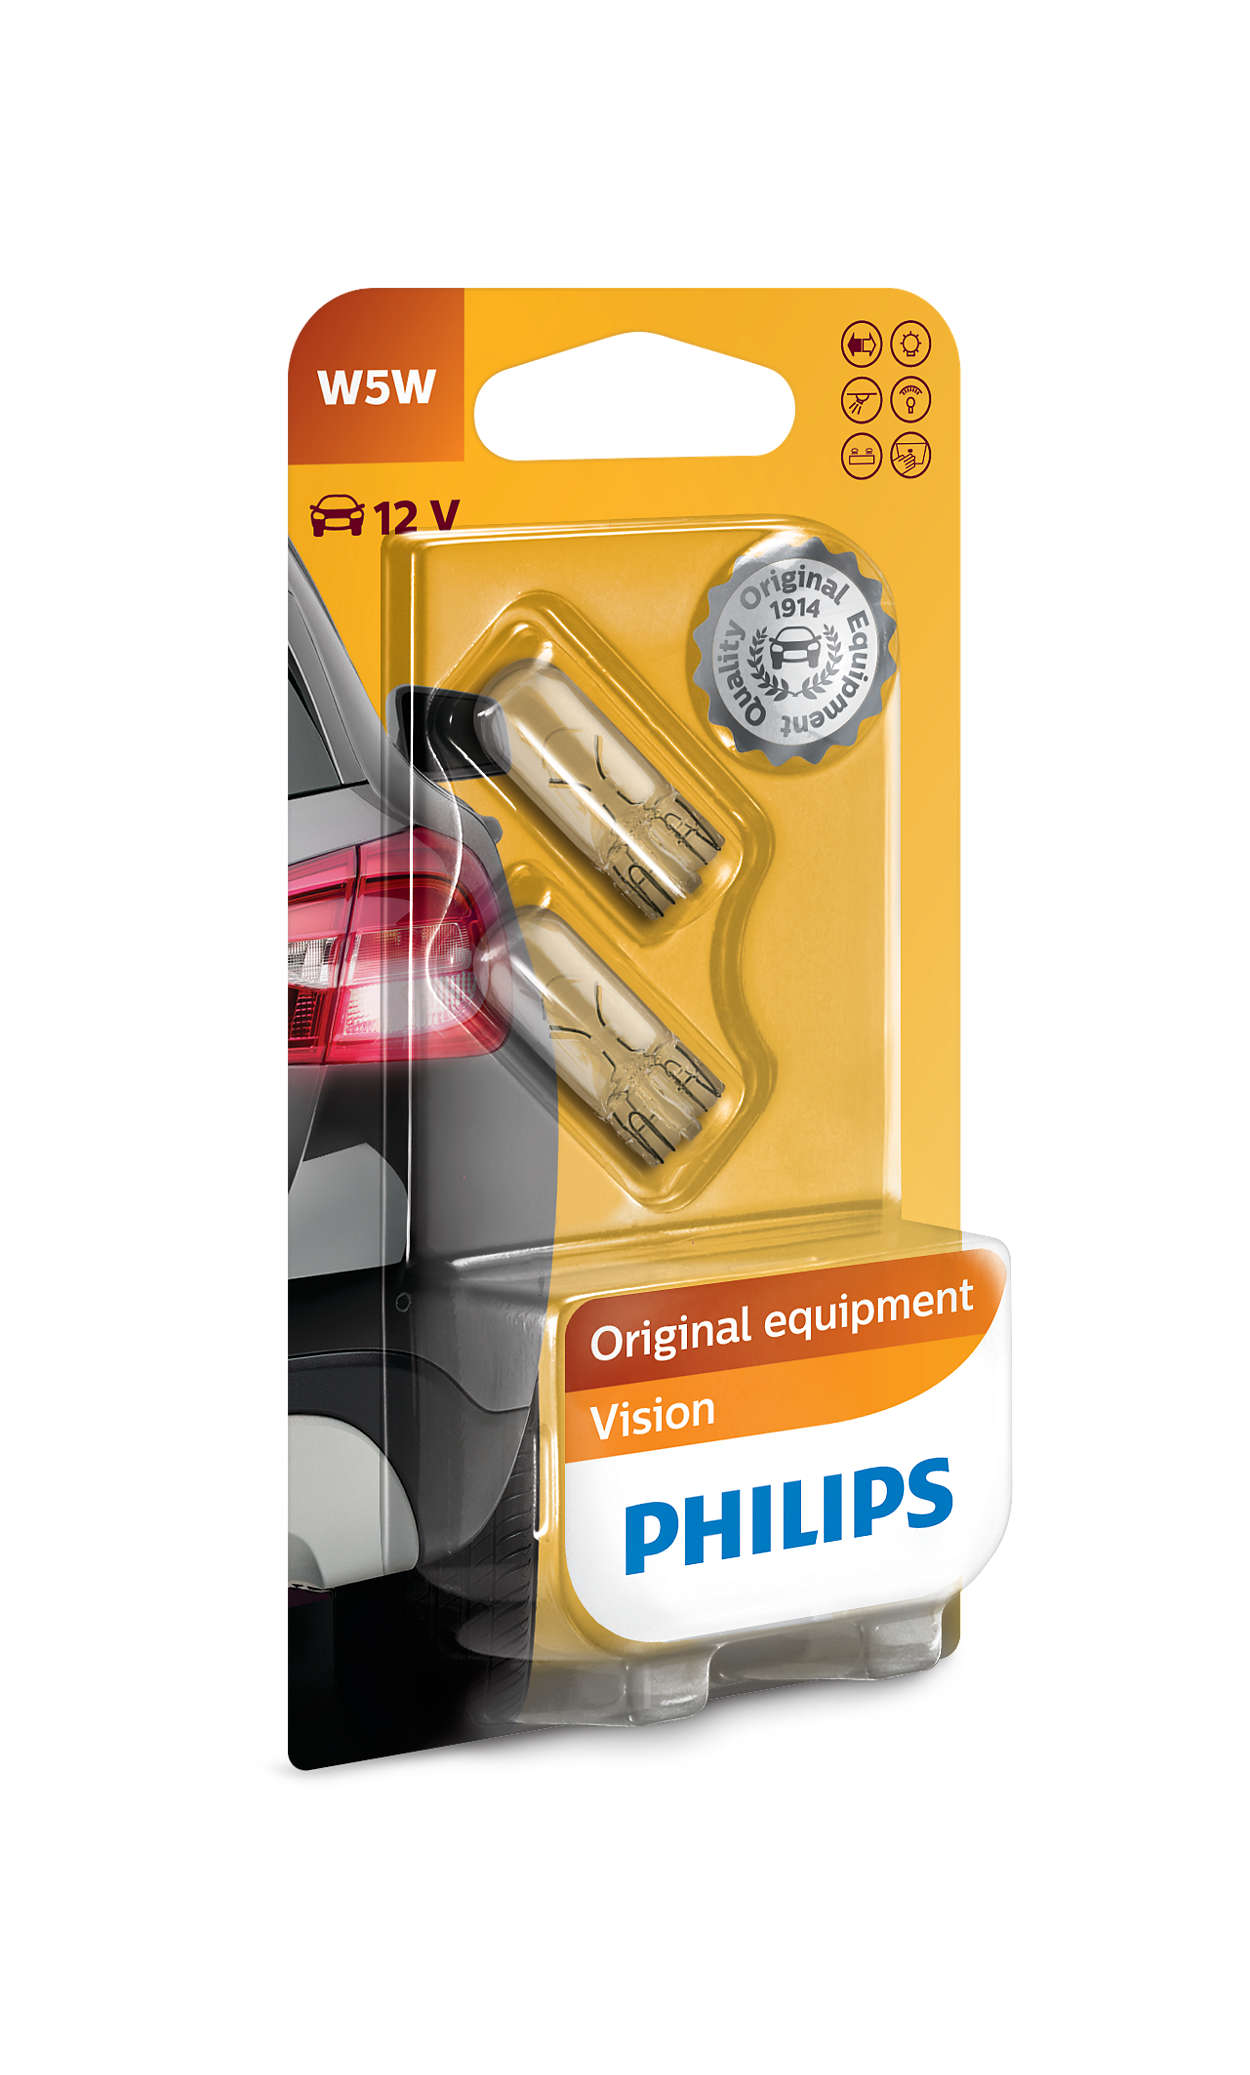 Philips Ultinon Pro6000 W5W LED Glassockel Straßenzulassung 6000K  11961HU60X2